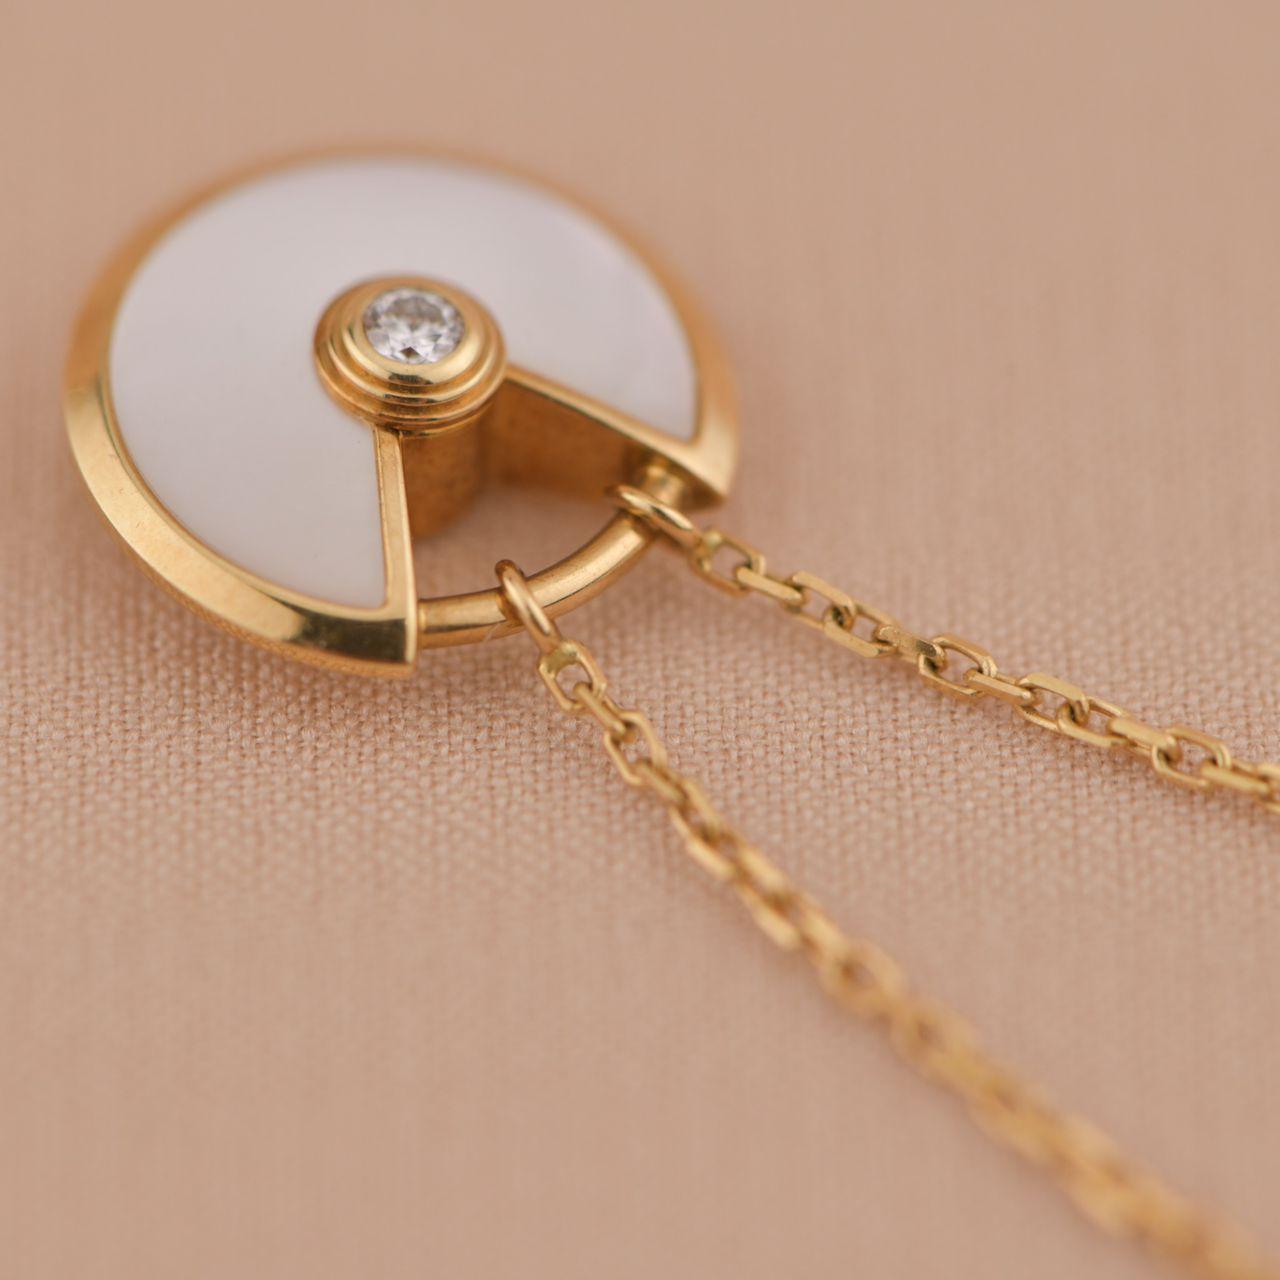 Brilliant Cut Cartier Amulette De Cartier 18k Yellow Gold Mother of Pearl Necklace